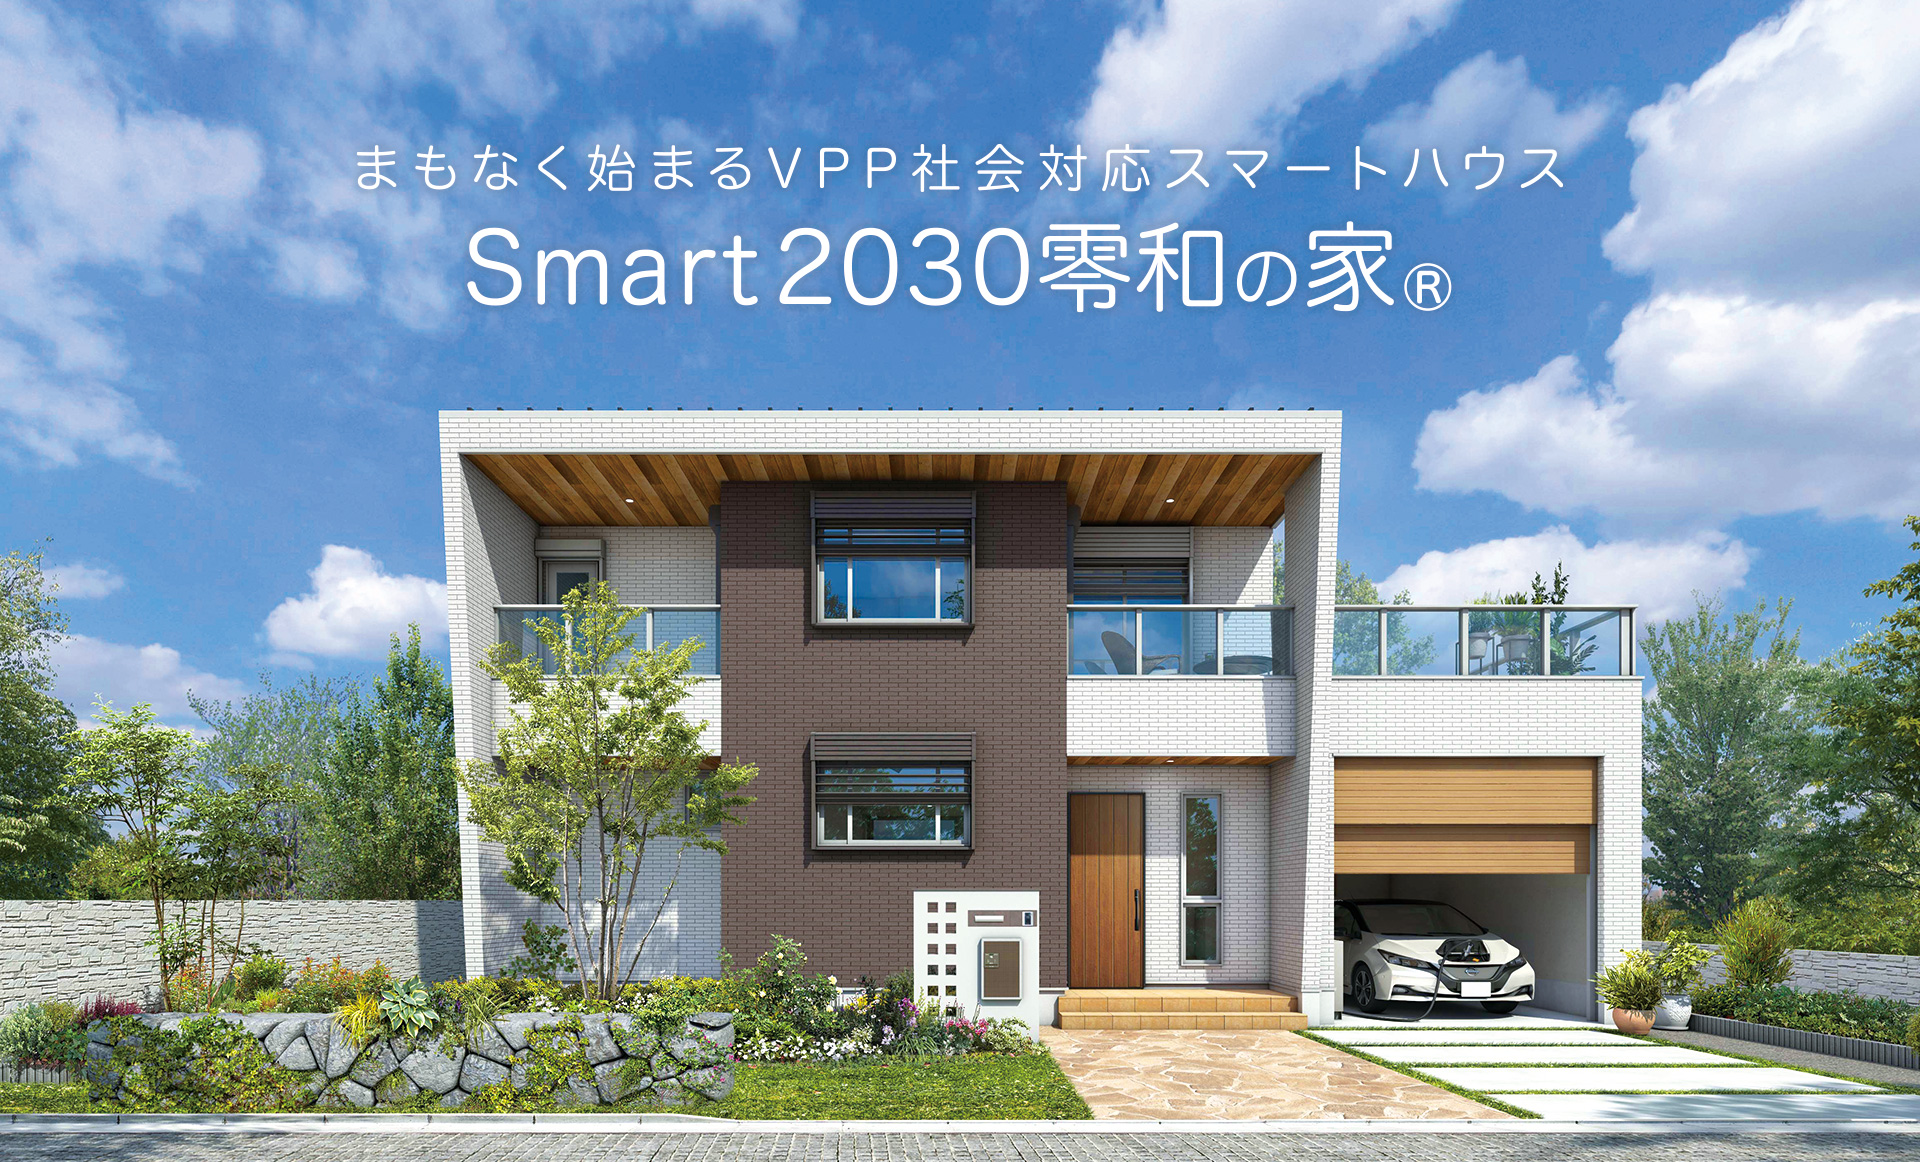 まもなく始まるVPP社会対応スマートハウス「Smart2030 零和の家」